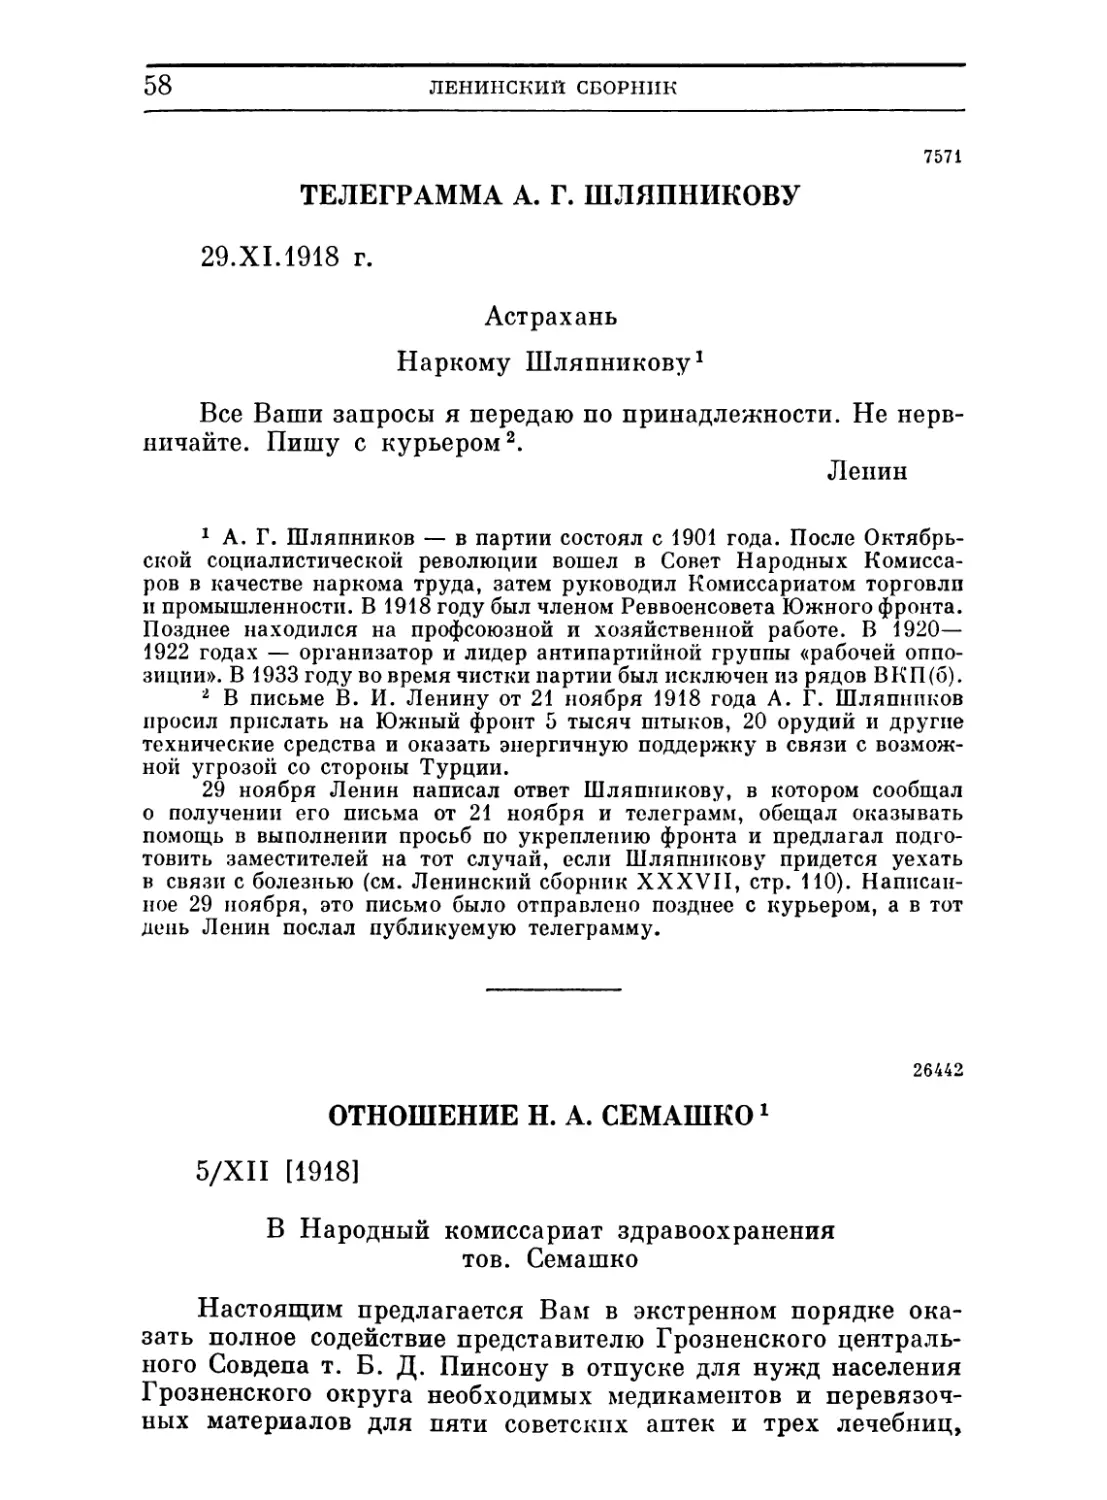 Телеграмма А. Г. Шляпникову. 29 ноября 1918
Отношение Н. А. Семашко. 5 декабря 1918